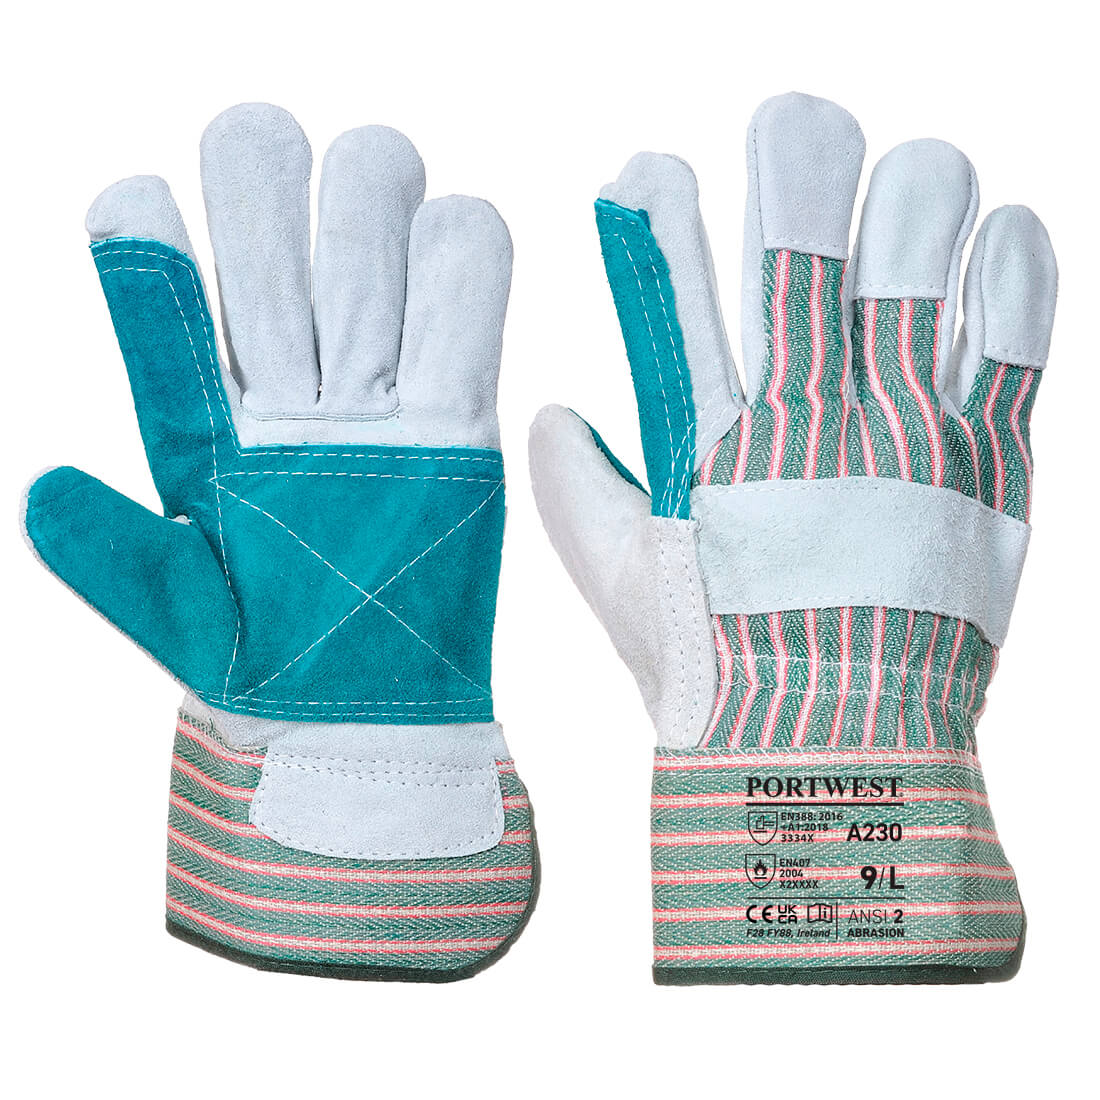 Portwest Double Palm Cotton Back Glove (A230)